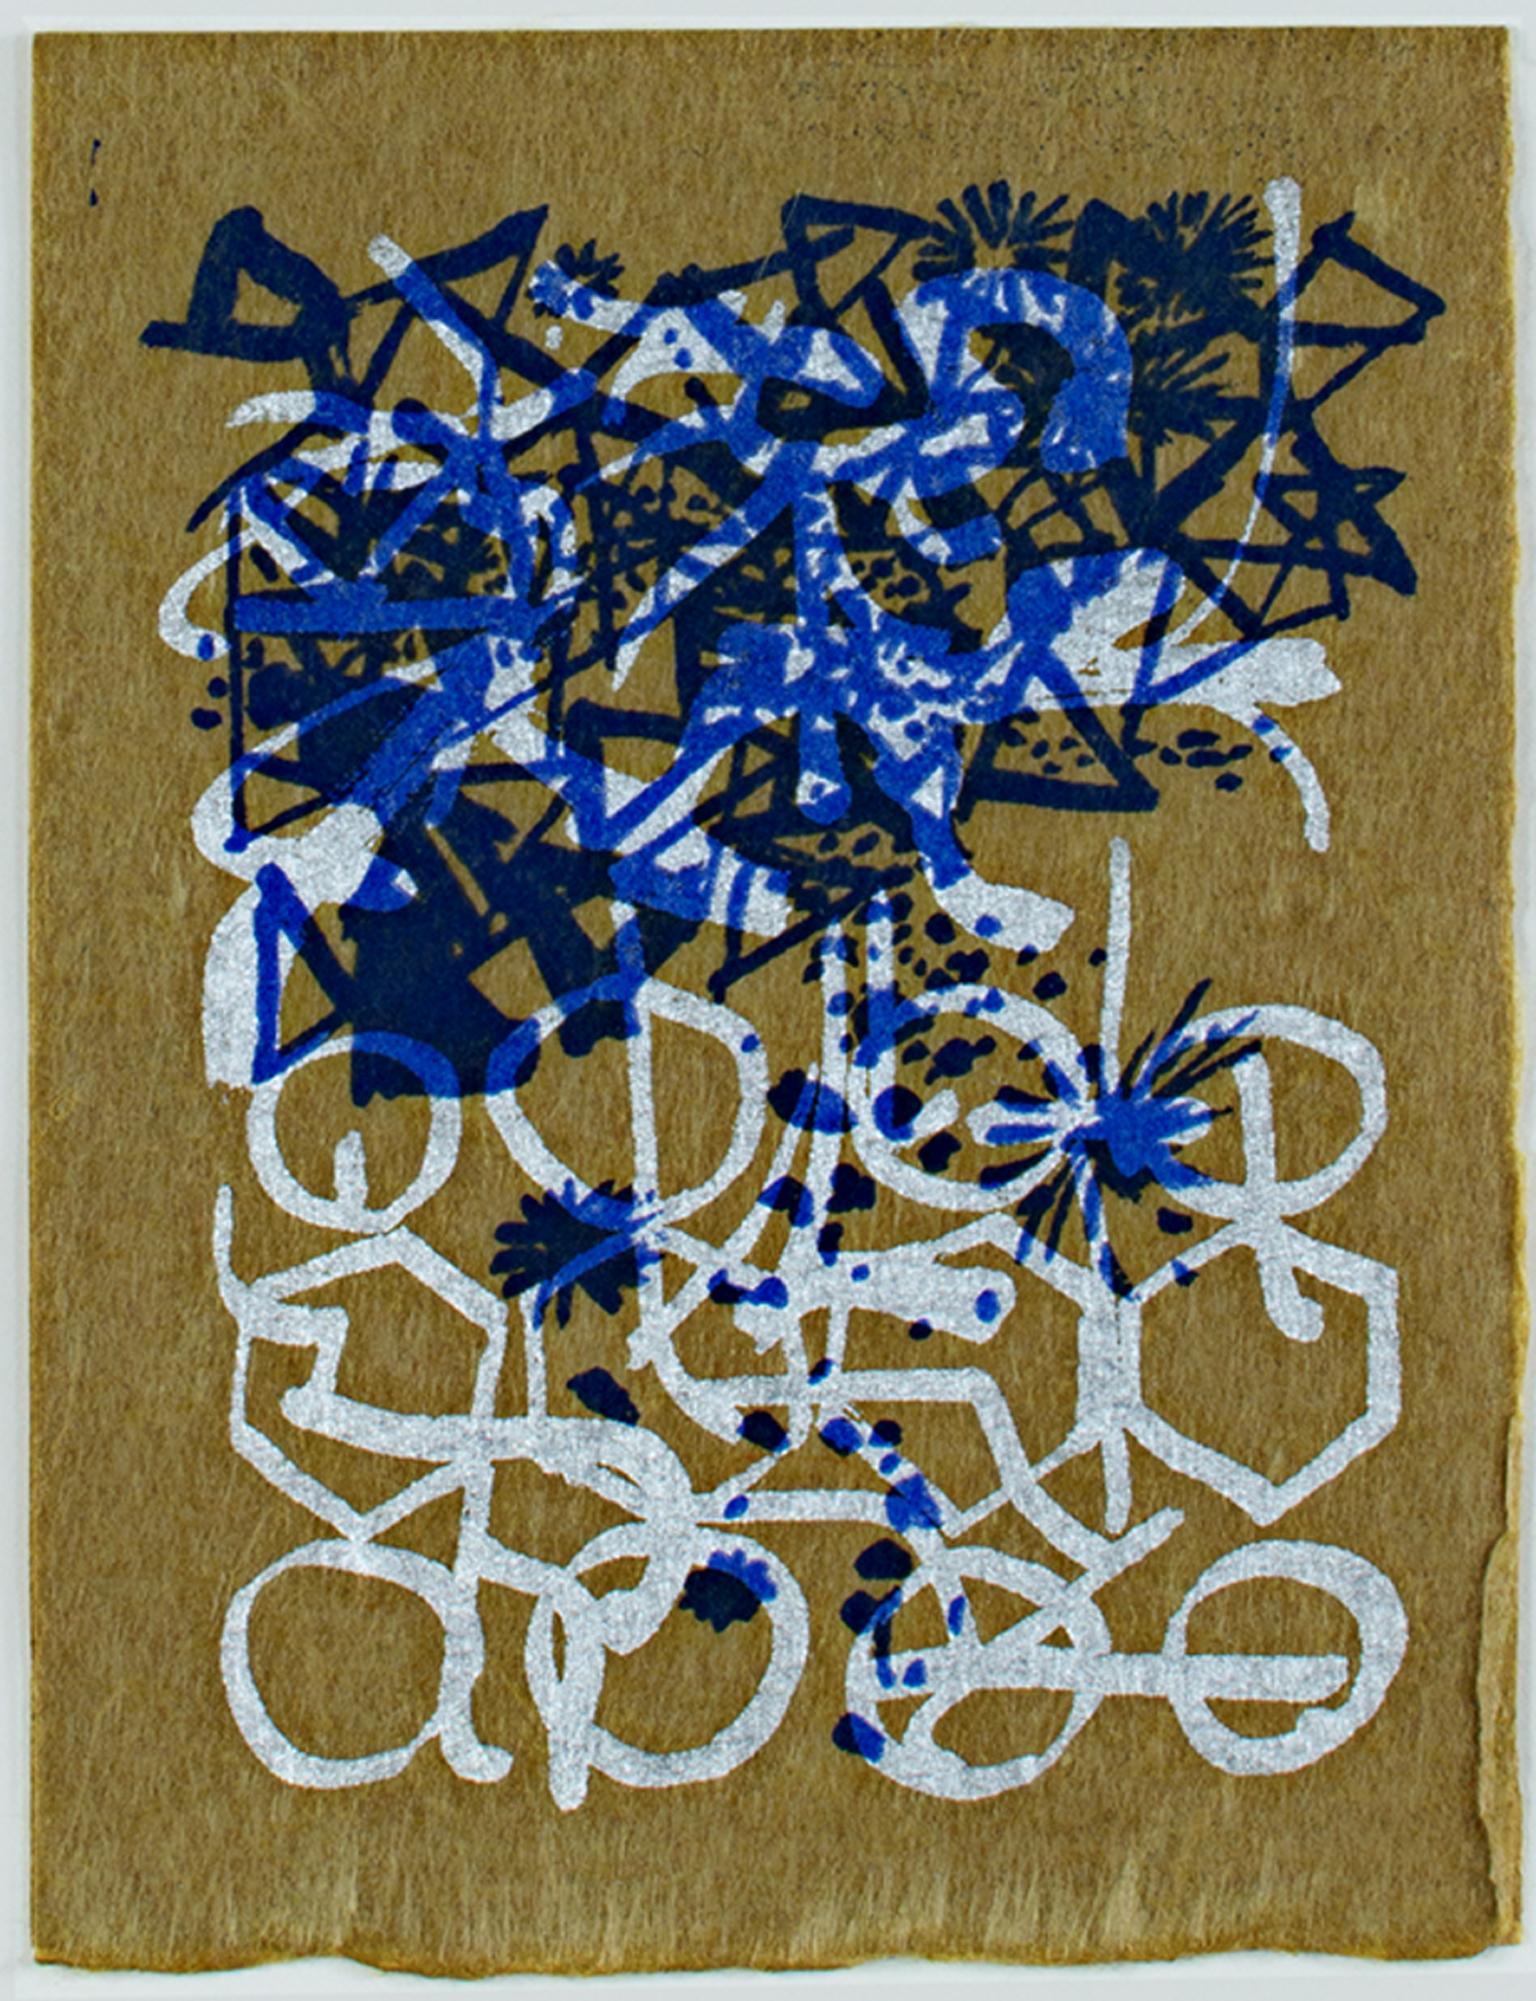 "Season's Greetings" est une sérigraphie couleur originale de Schomer Lichtner. L'artiste a signé l'œuvre dans la trame au verso. Cette pièce présente des motifs abstraits et linéaires en bleu et blanc sur un fond de papier brun. 

6 1/4" x 4 5/8"